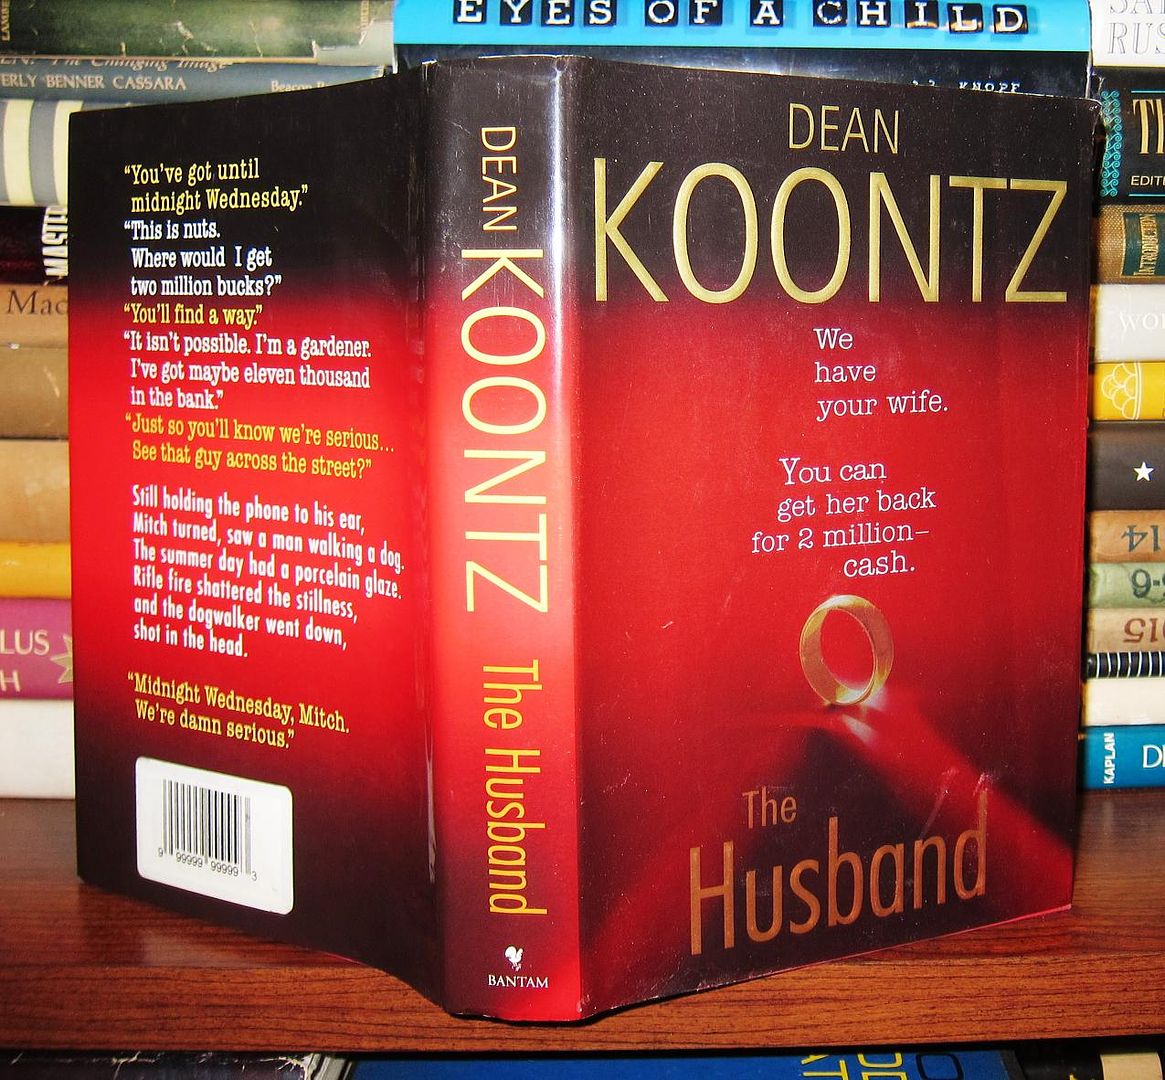 KOONTZ, DEAN - The Husband